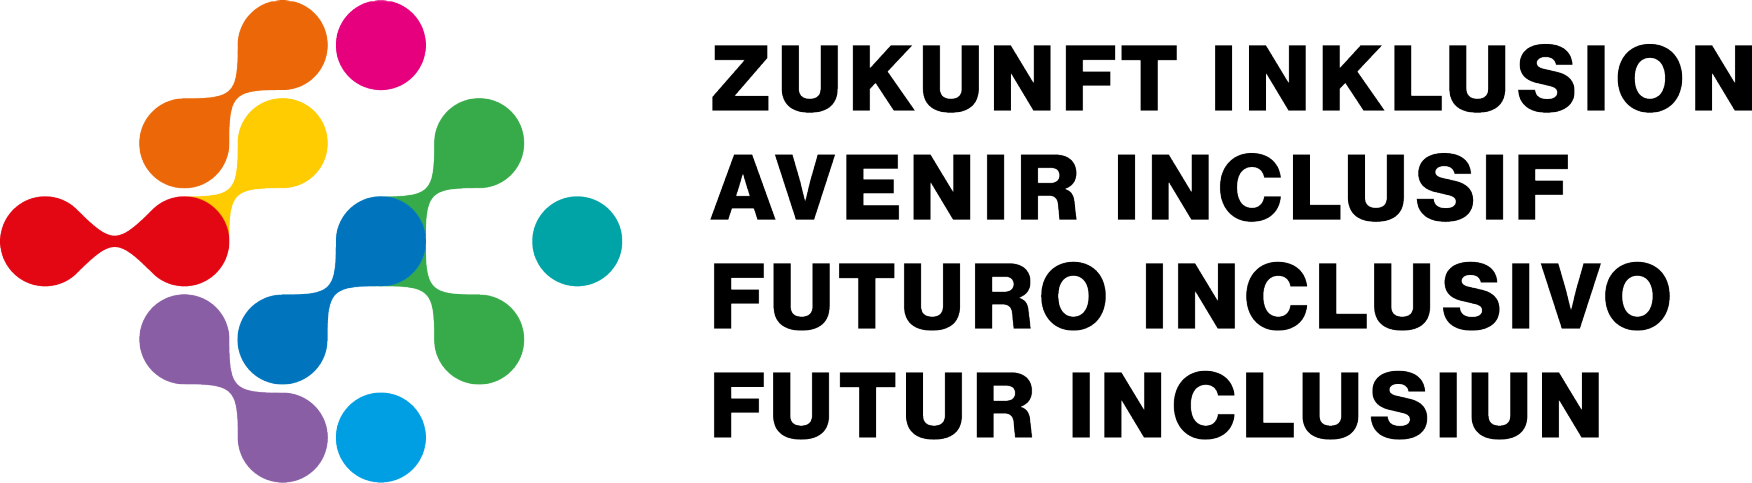 Buntes Zukunft Inklusion Logo in den vier Schweizer Landessprachen